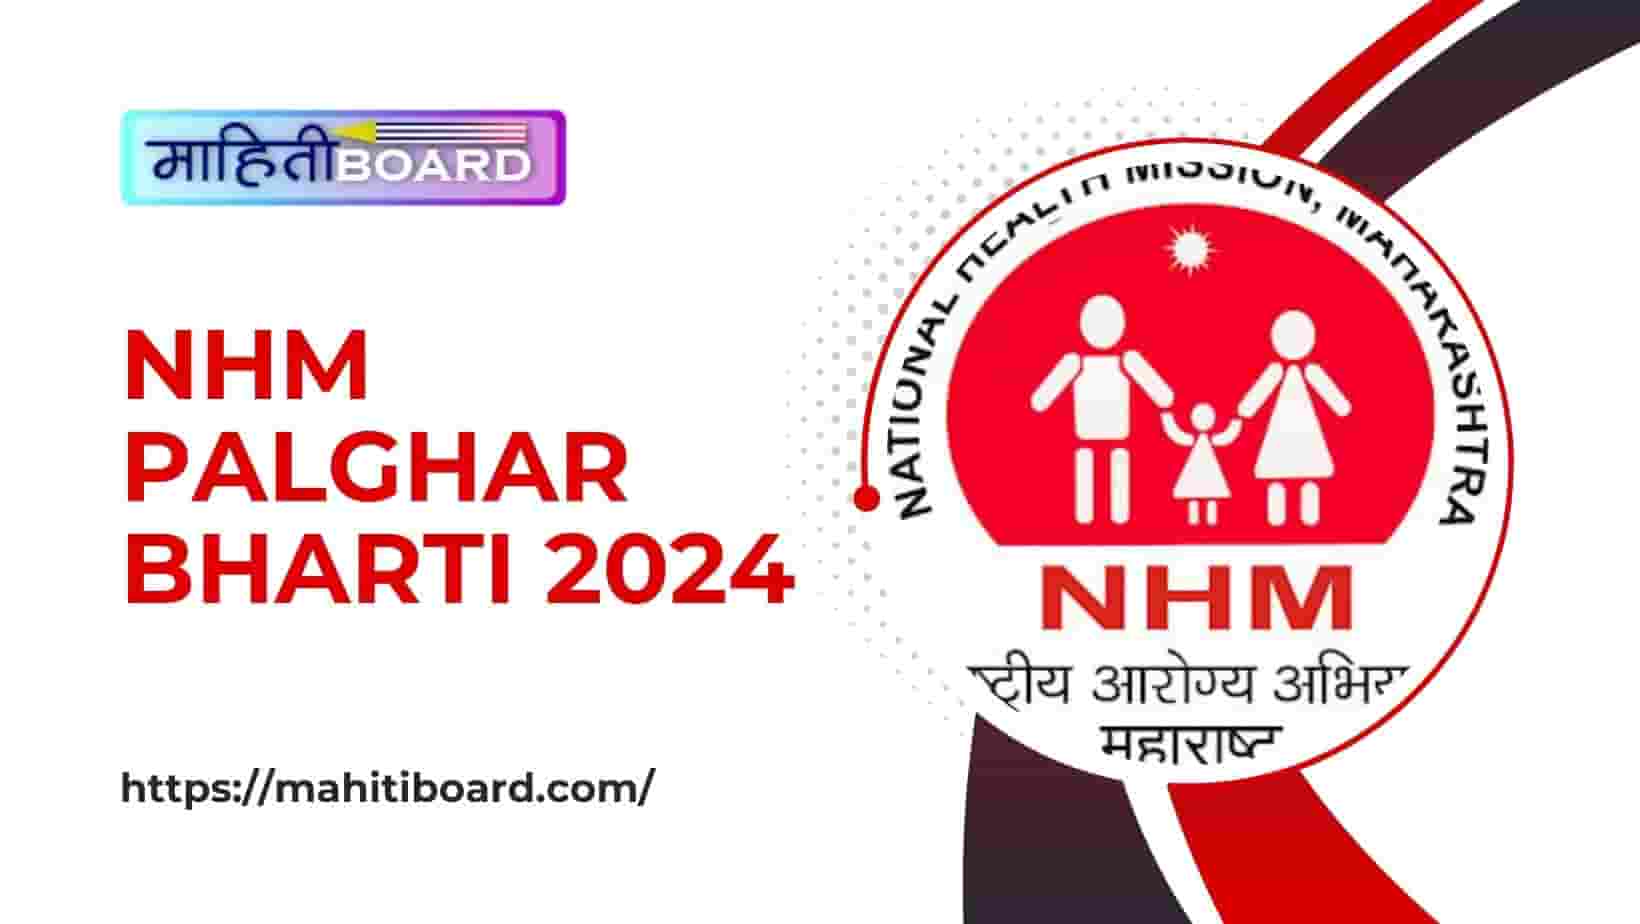 NHM Palghar Bharti 2024